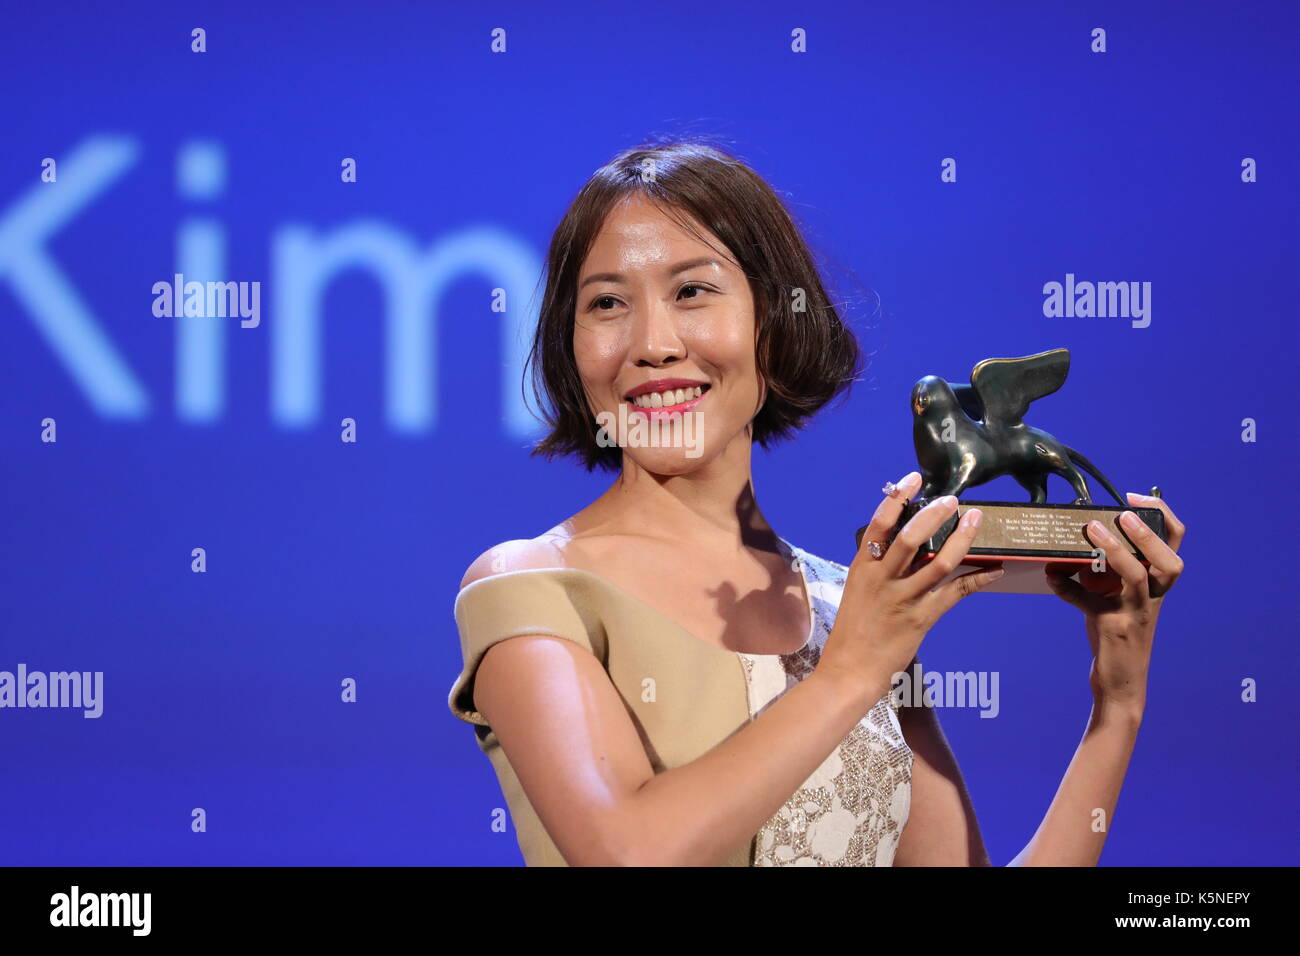 VENEDIG, ITALIEN - SEPTEMBER 09: Gina Kim erhält von John Landis den Preis für die beste VR (Virtual Reality) für den Film 'Bloodless' während der Preisverleihung der 74. Filmfestspiele von Venedig am 9. September 2017 im Lido von Venedig. Stockfoto